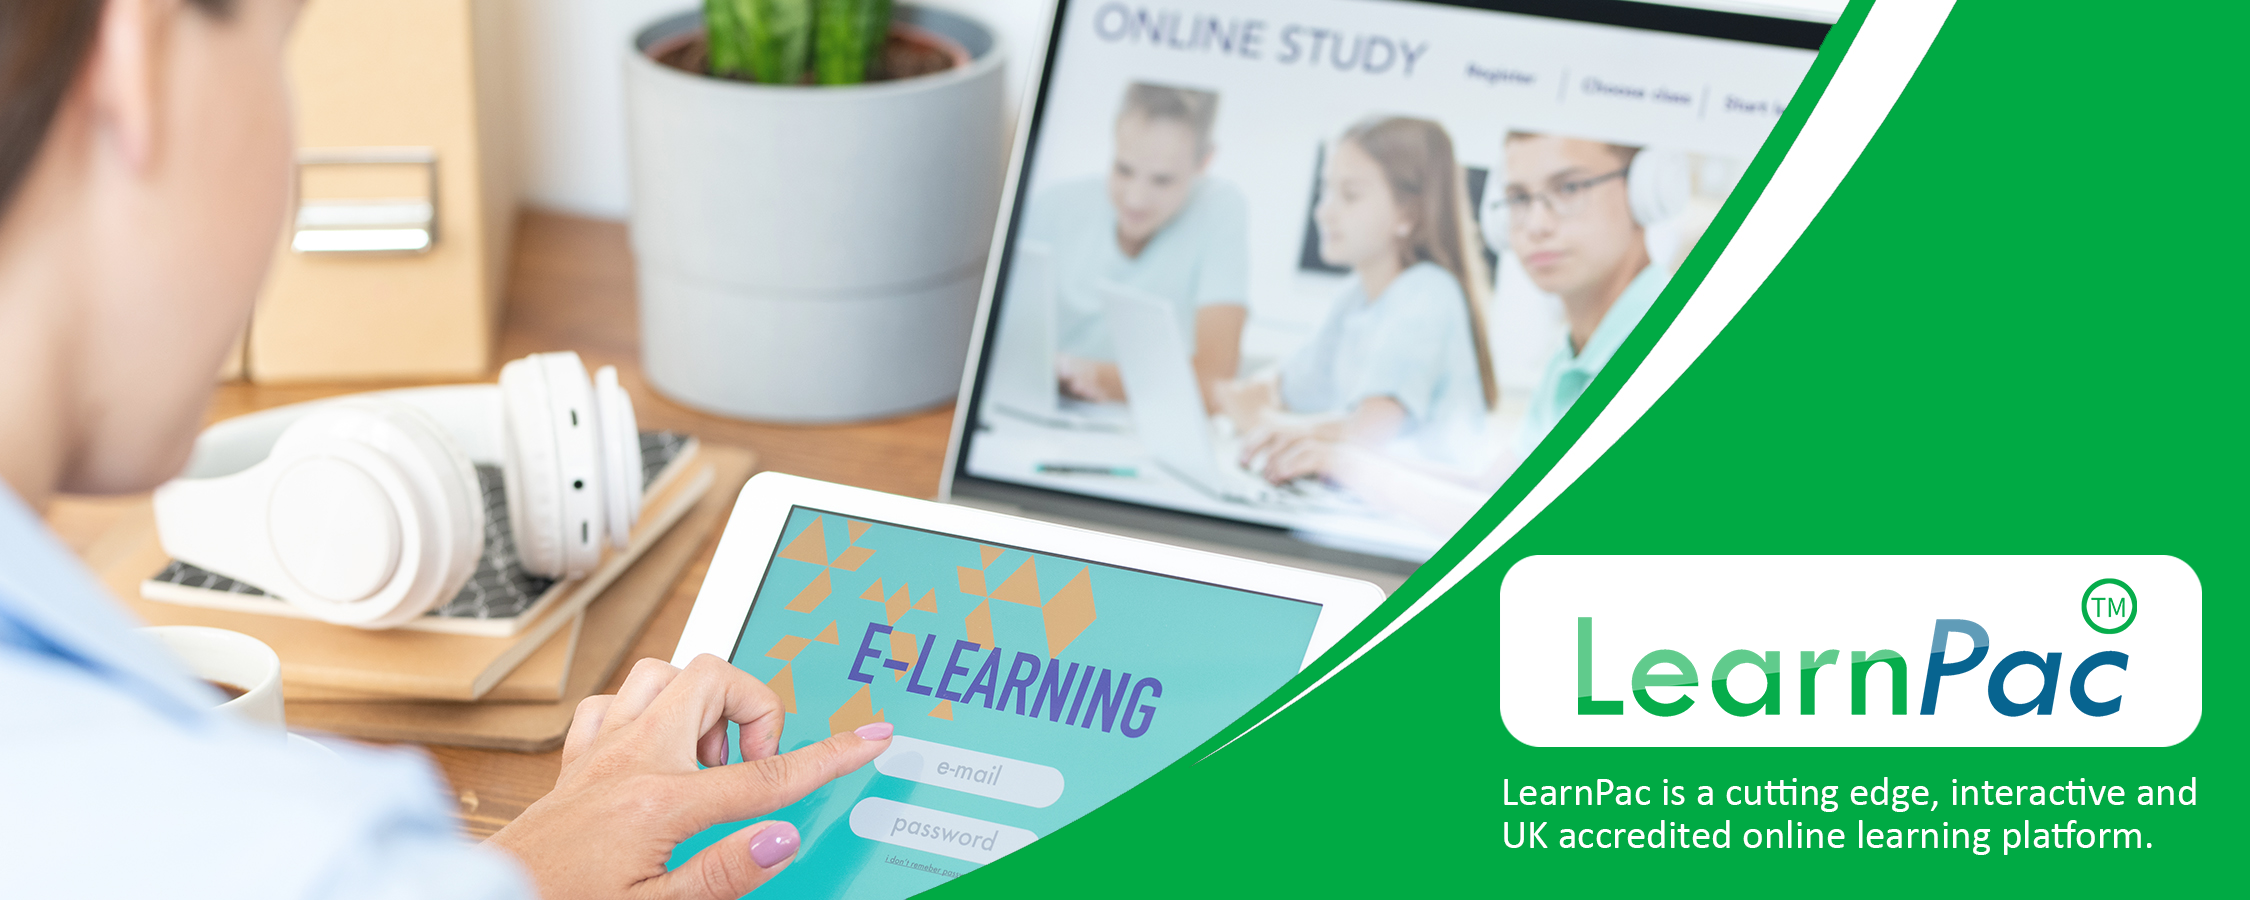 Understanding Leadership - Online Learning Courses - E-Learning Courses - LearnPac Systems UK --